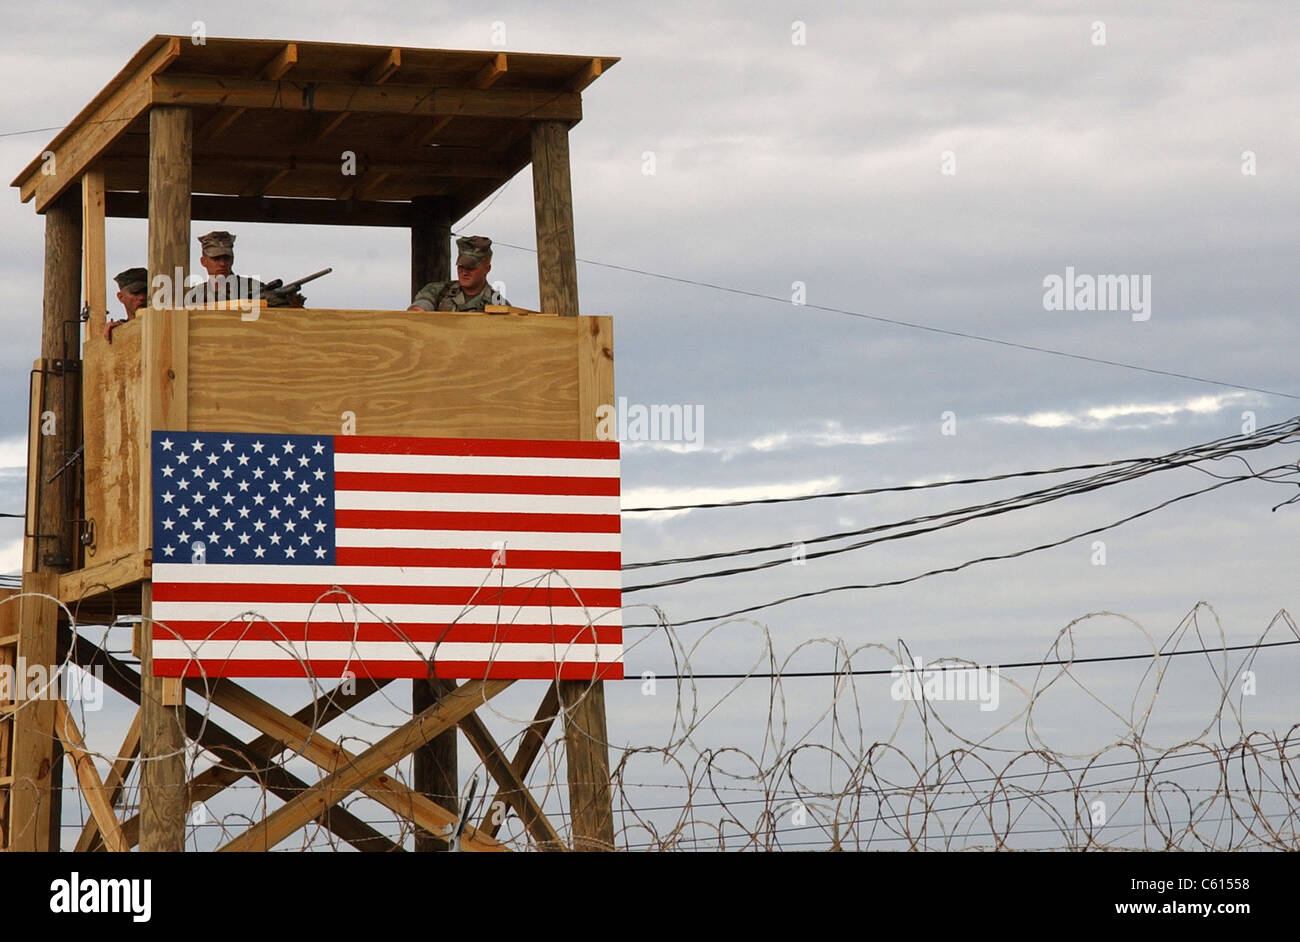 Uhr Turm Sicherheitsteams an Camp x-ray Mann Positionen während einer Probe für den Umgang mit eingehenden Häftlinge 10. Januar 2002. Camp x-ray Verwahrungsanstalt für vermutete Taliban und Al-Qaida-Kämpfer statt am Naval Base Guantánamo Bay Kuba. Foto: Everett Collection(BSLOC 2011 6 165) Stockfoto